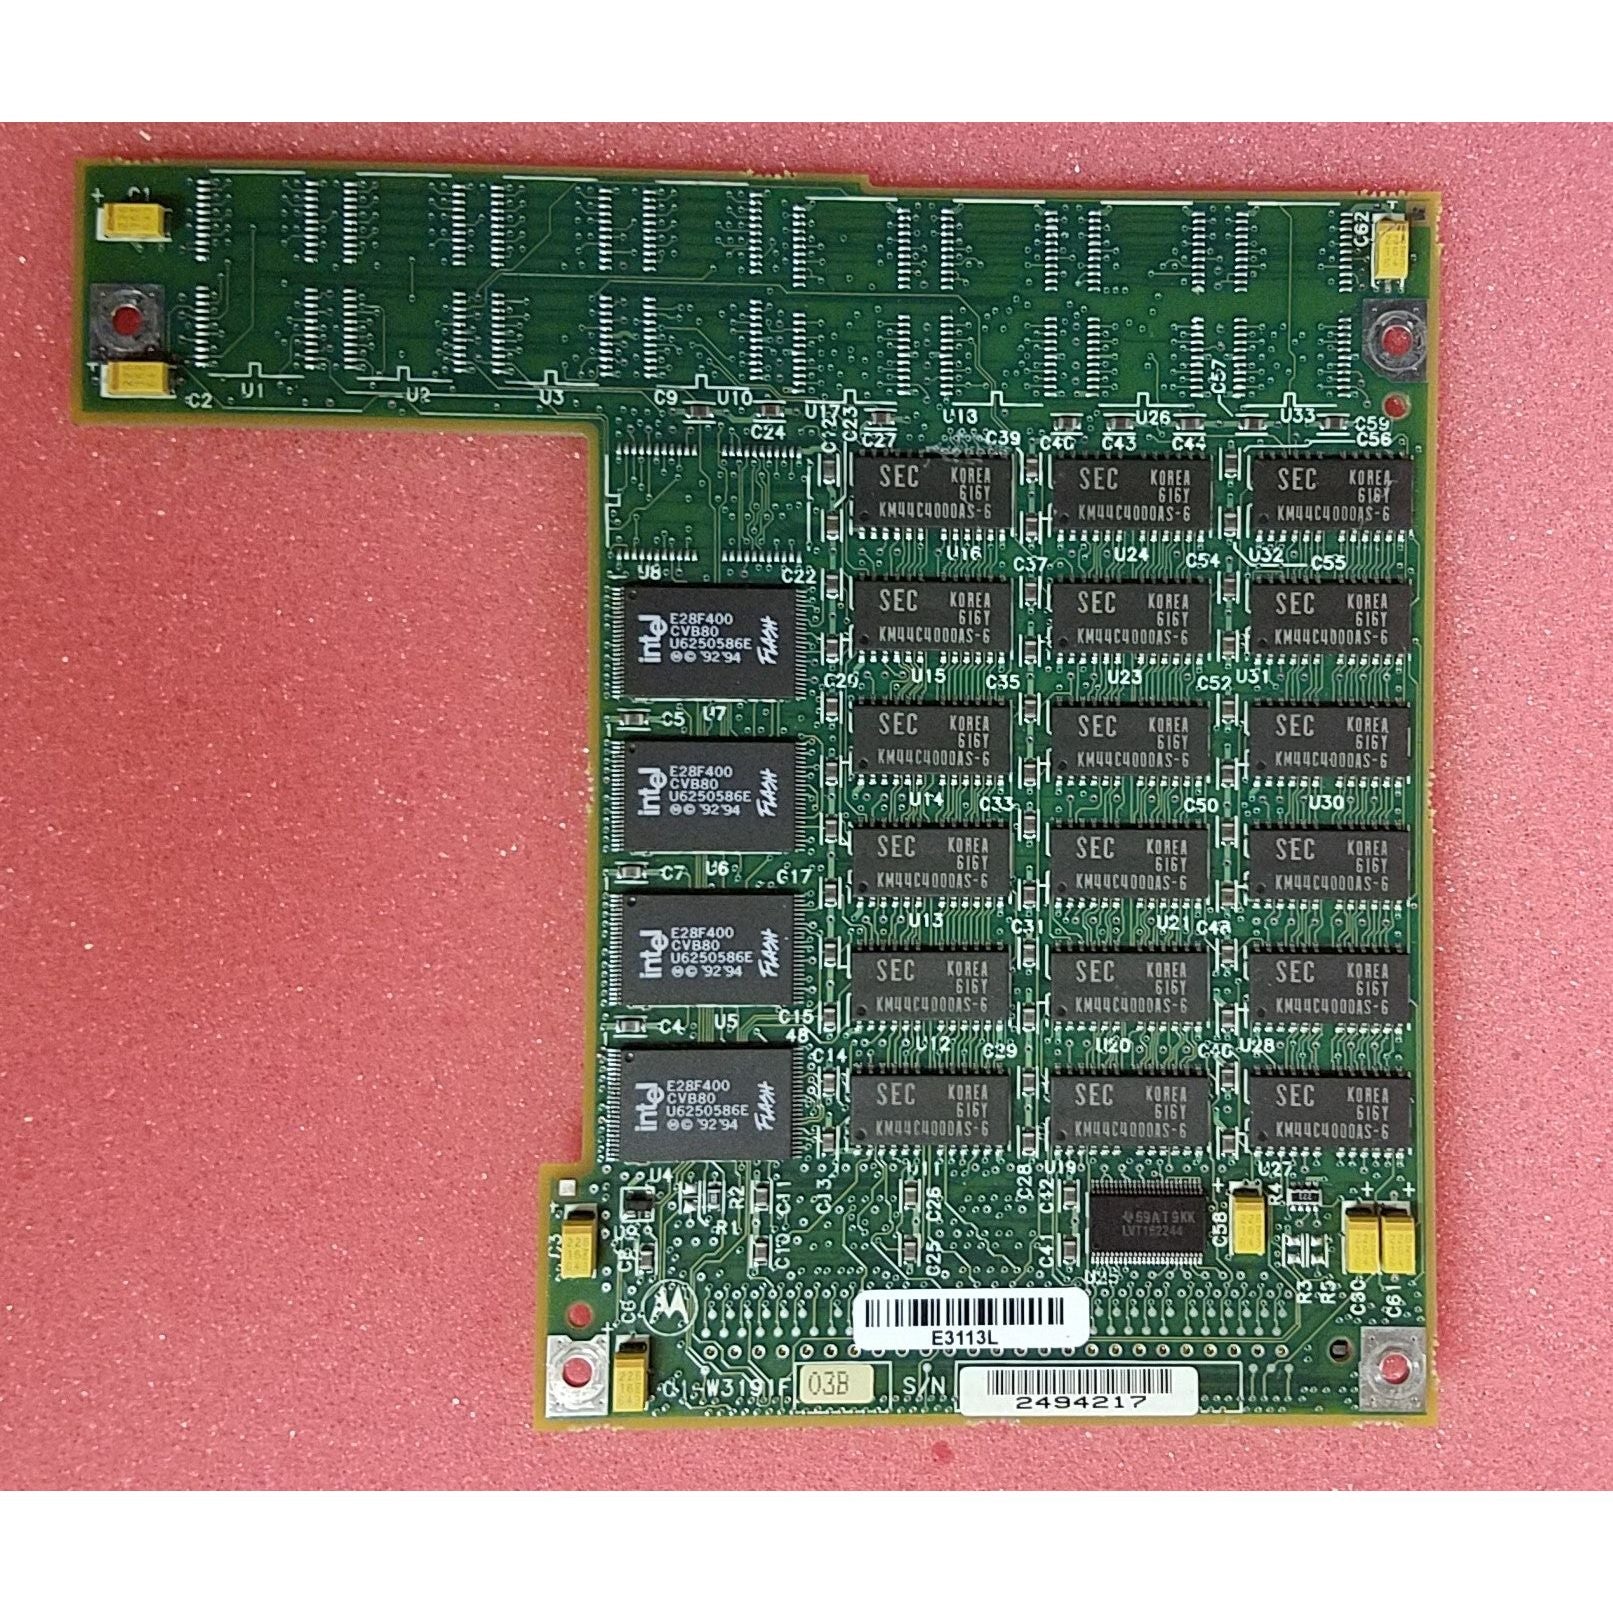 RAM 200-044A | Motorola